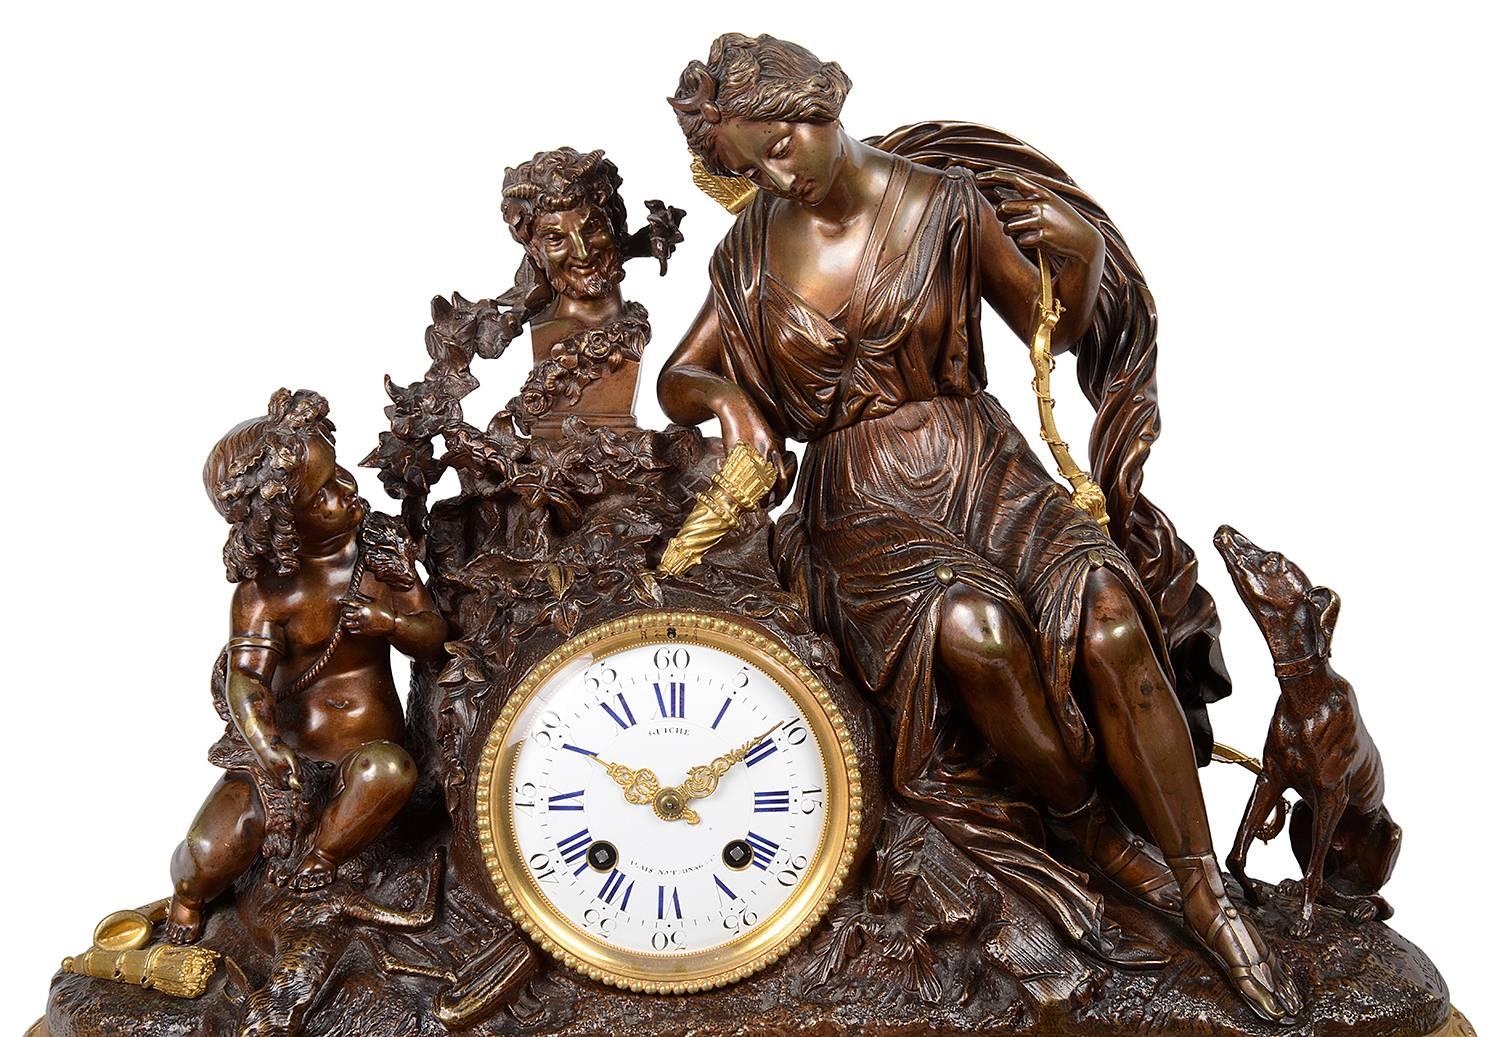 Un grand et impressionnant ensemble d'horloges de bonne qualité, de style Louis XVI français, en bronze et bronze doré. Une mère et son enfant sont montés au-dessus de l'horloge, qui possède un mouvement à sonnerie de huit jours, heures et